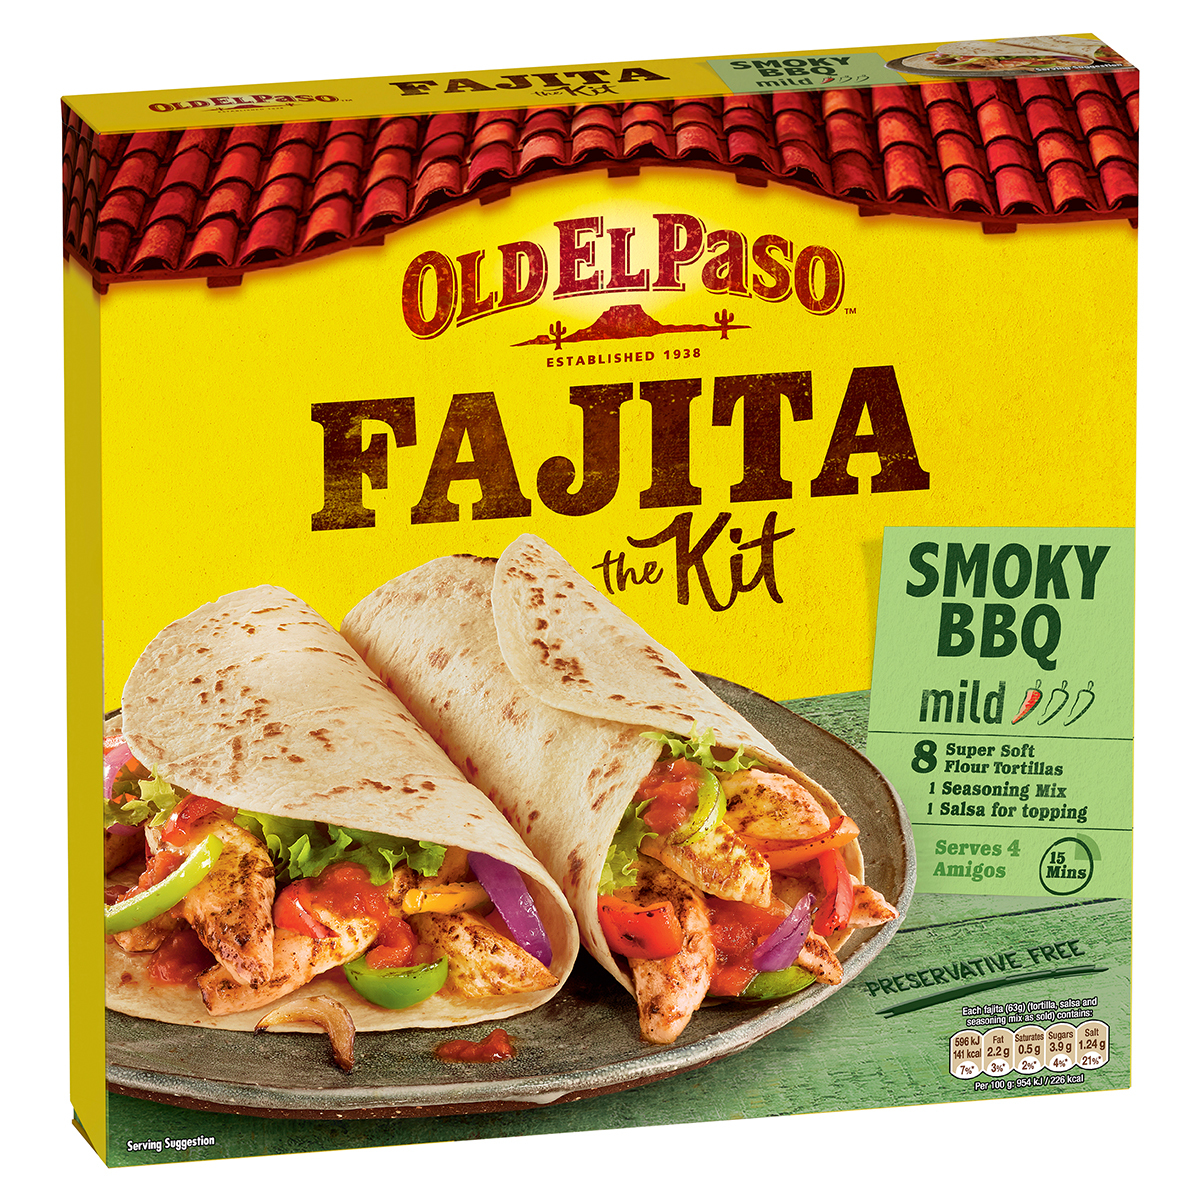 Old El Paso Smoky BBQ Fajita Kit, x 500g Costco UK